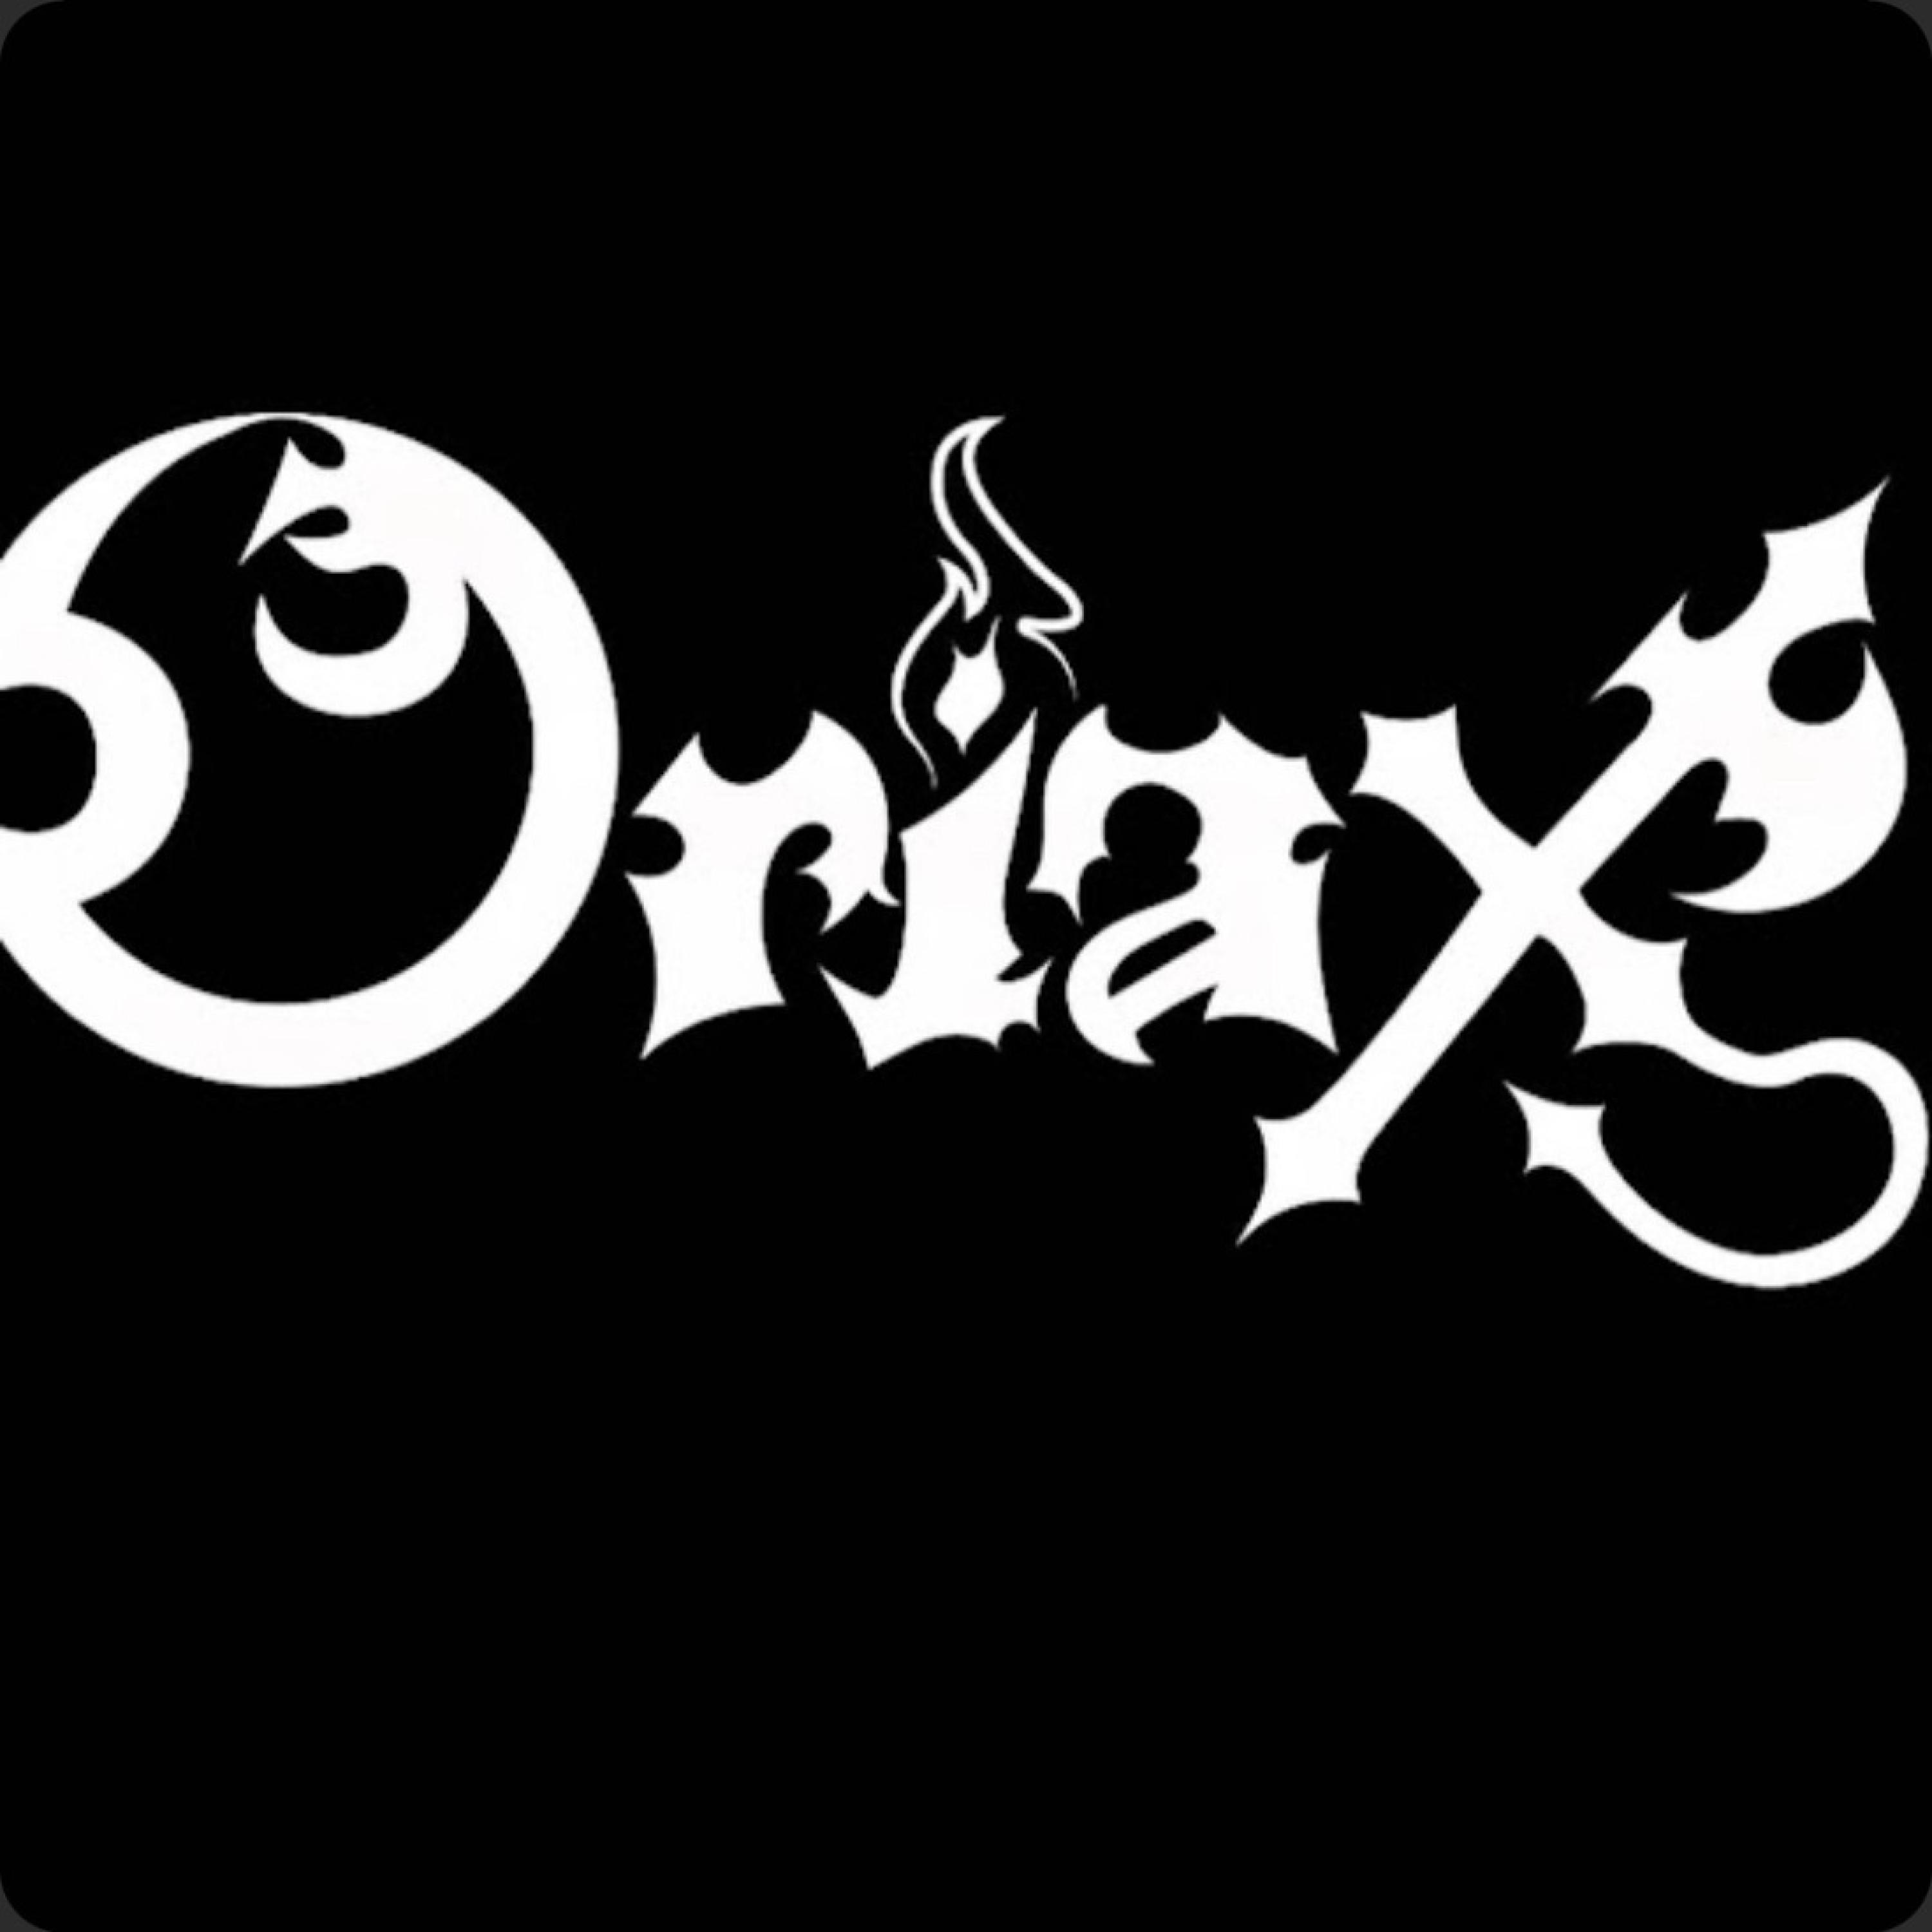 Oriax - Where Madness Reigns